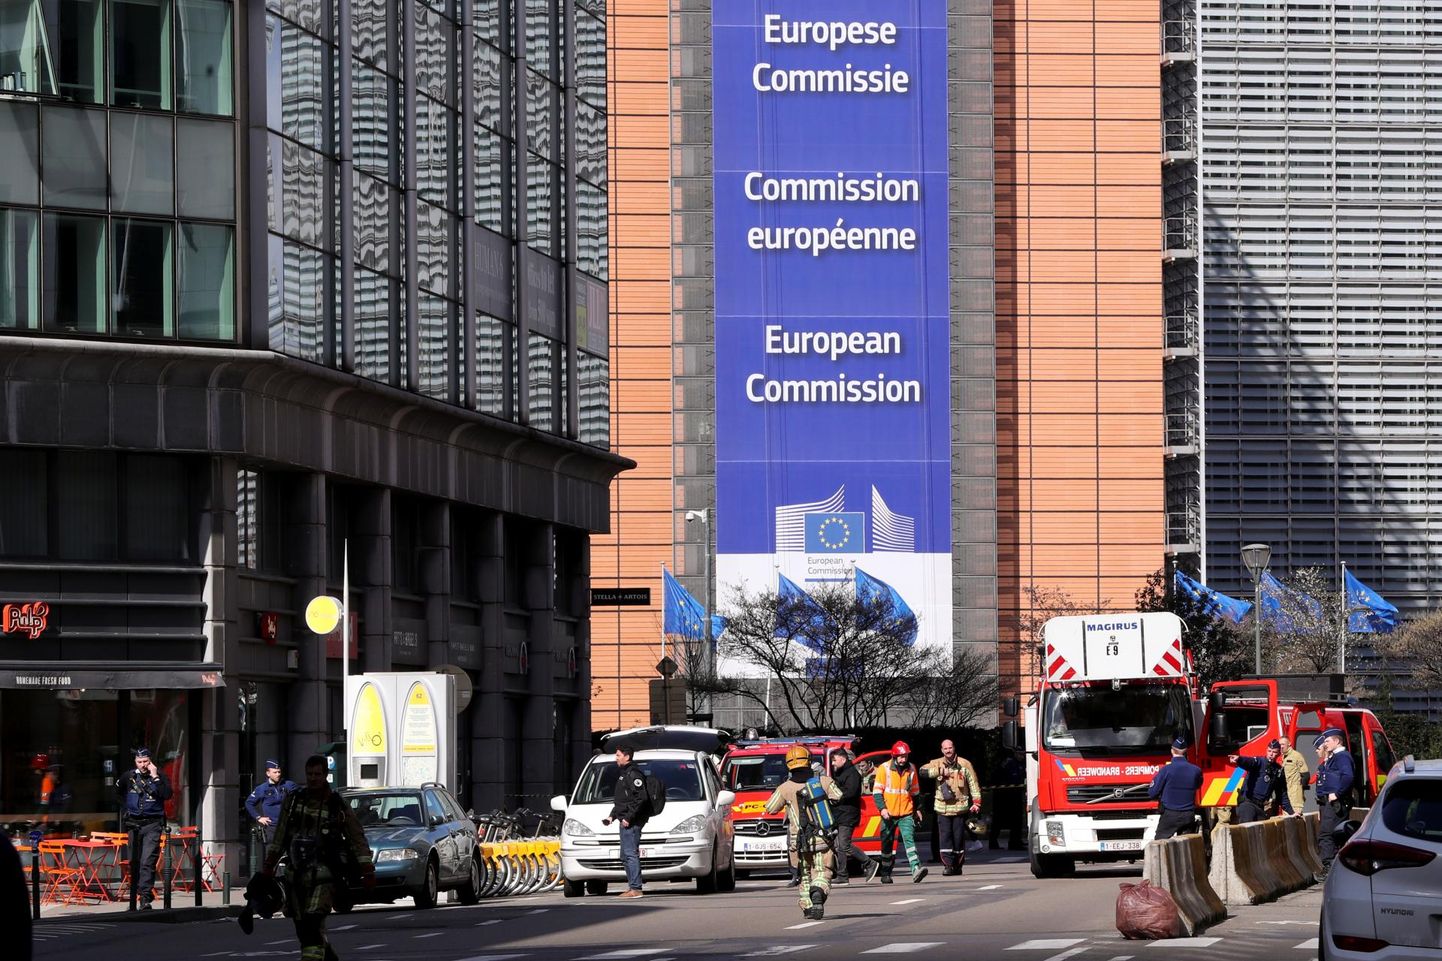 Euroopa Komisjon pole võtnud Eestilt iseotsustamise õigust, küll on kuulumine Euroopa Liitu aidanud elu edendada.